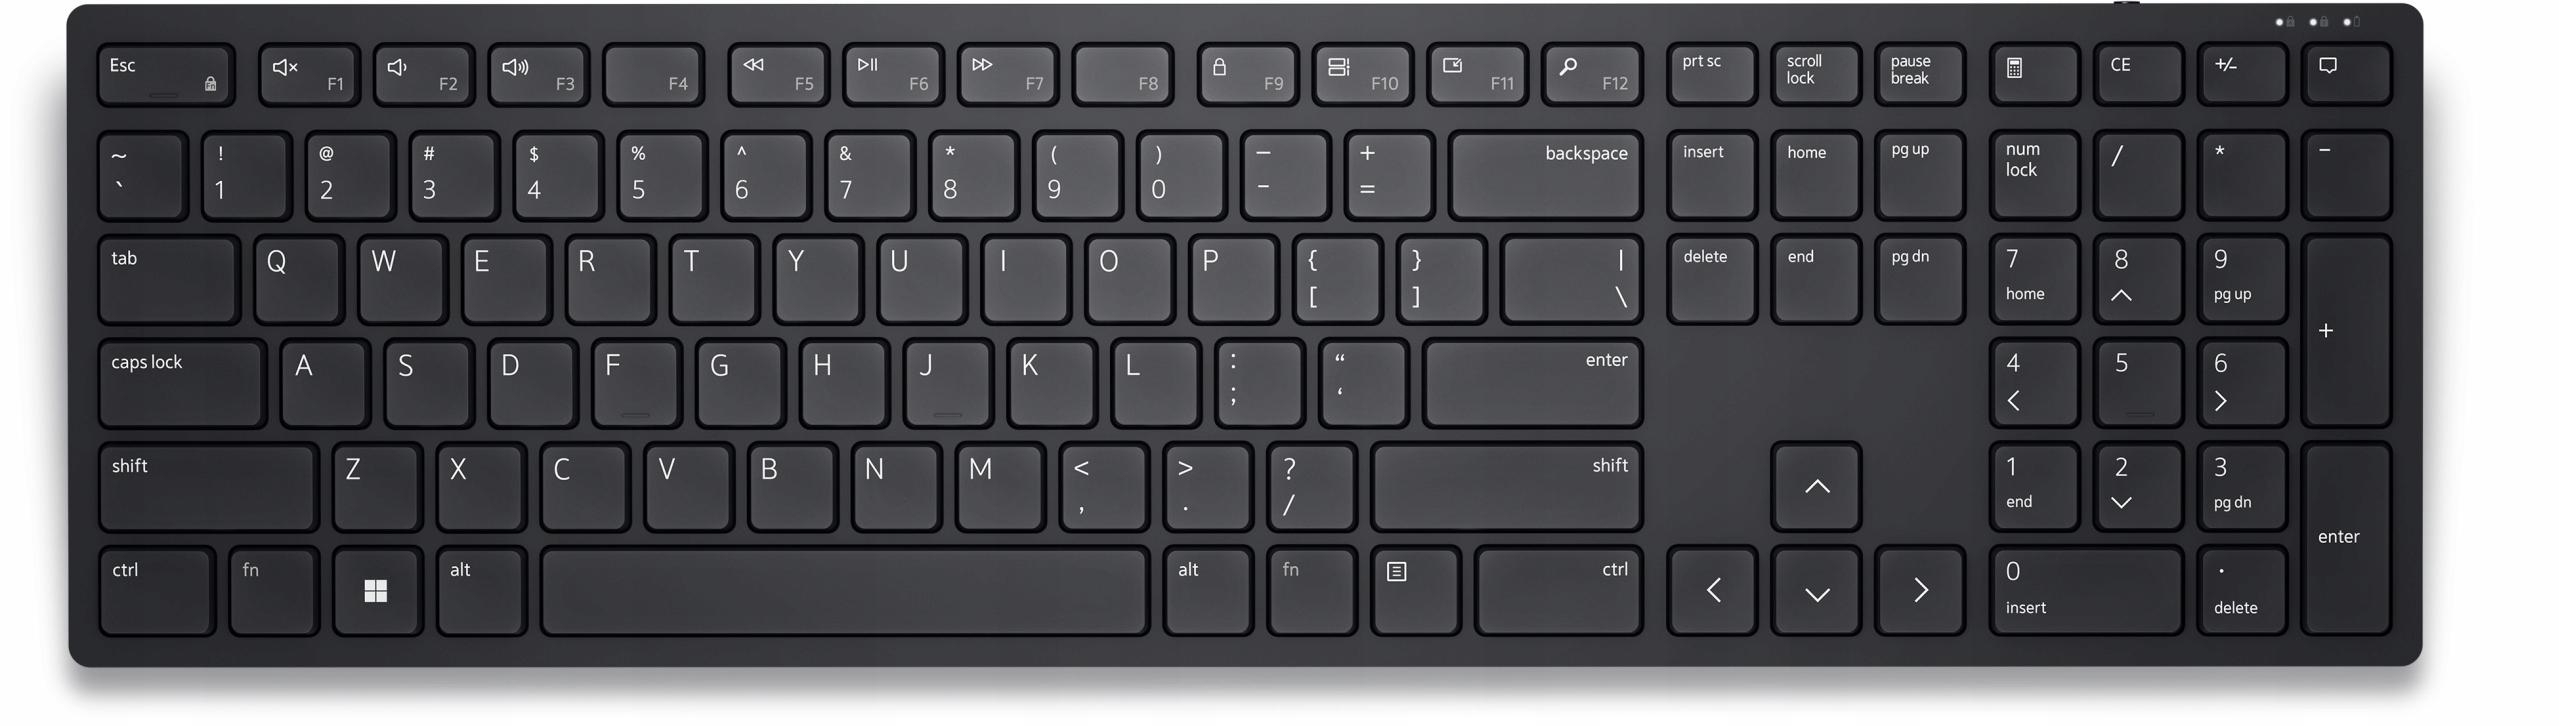 Klawiatura bezprzewodowa Dell KB500 Wireless Keyboard - 12 programowalnych klawiszy i oprogramowanie Dell